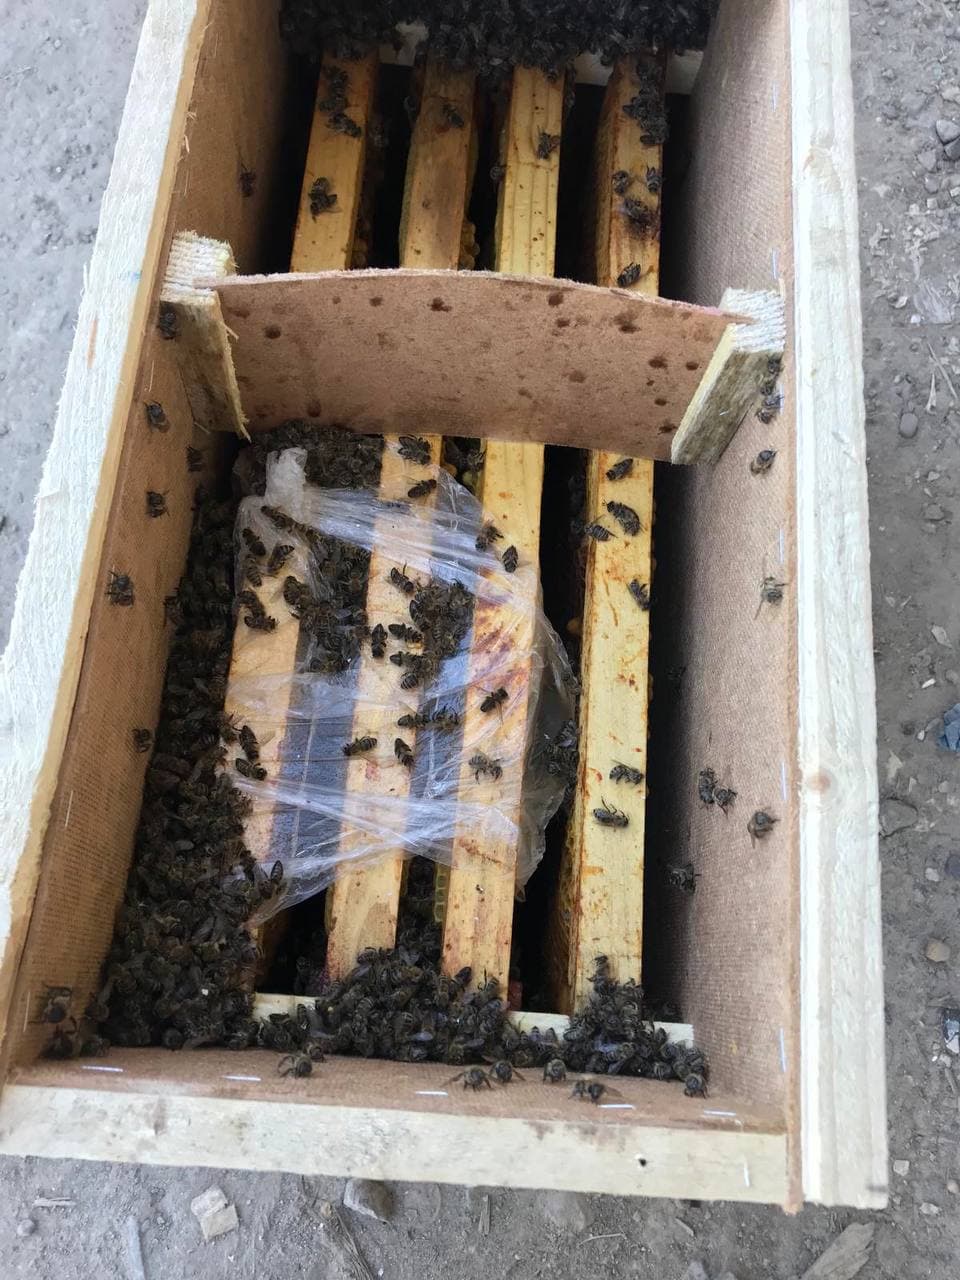 При перевозке Укр почтой погибли пчелы. Скриншот из телеграмм-канала журналиста  Виталия Глаголы